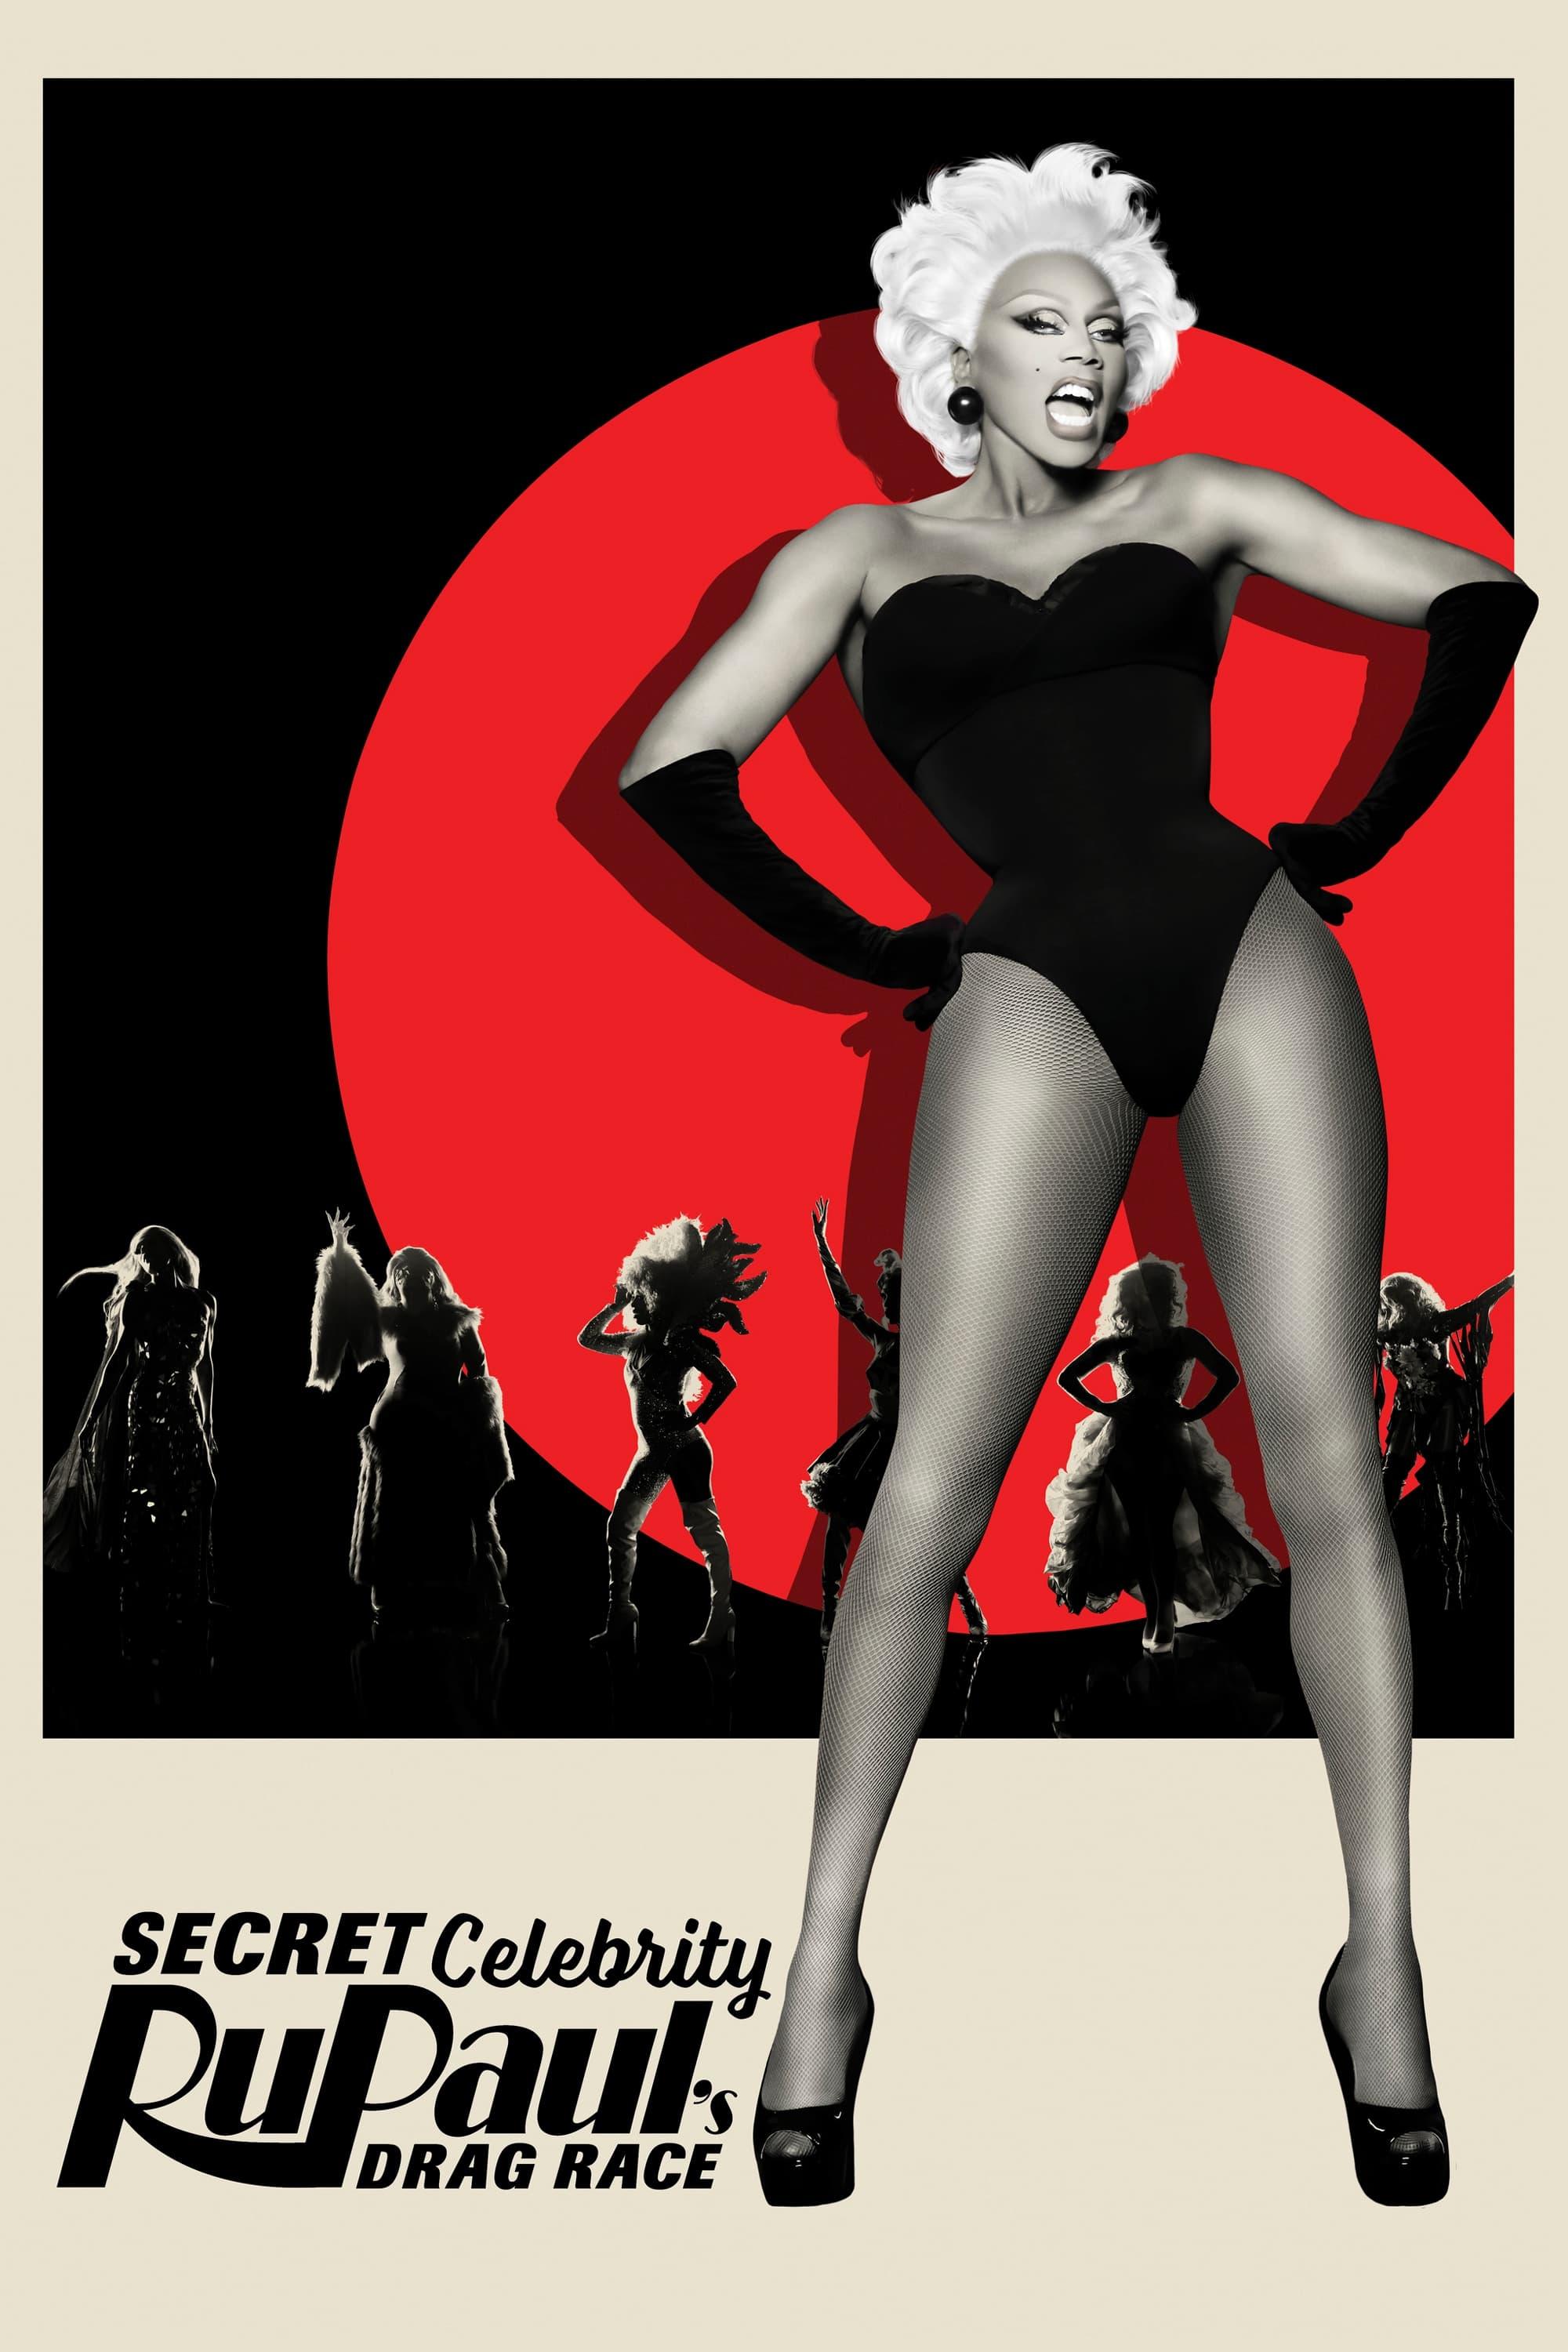 Secret Celebrity RuPaul's Drag Race poster